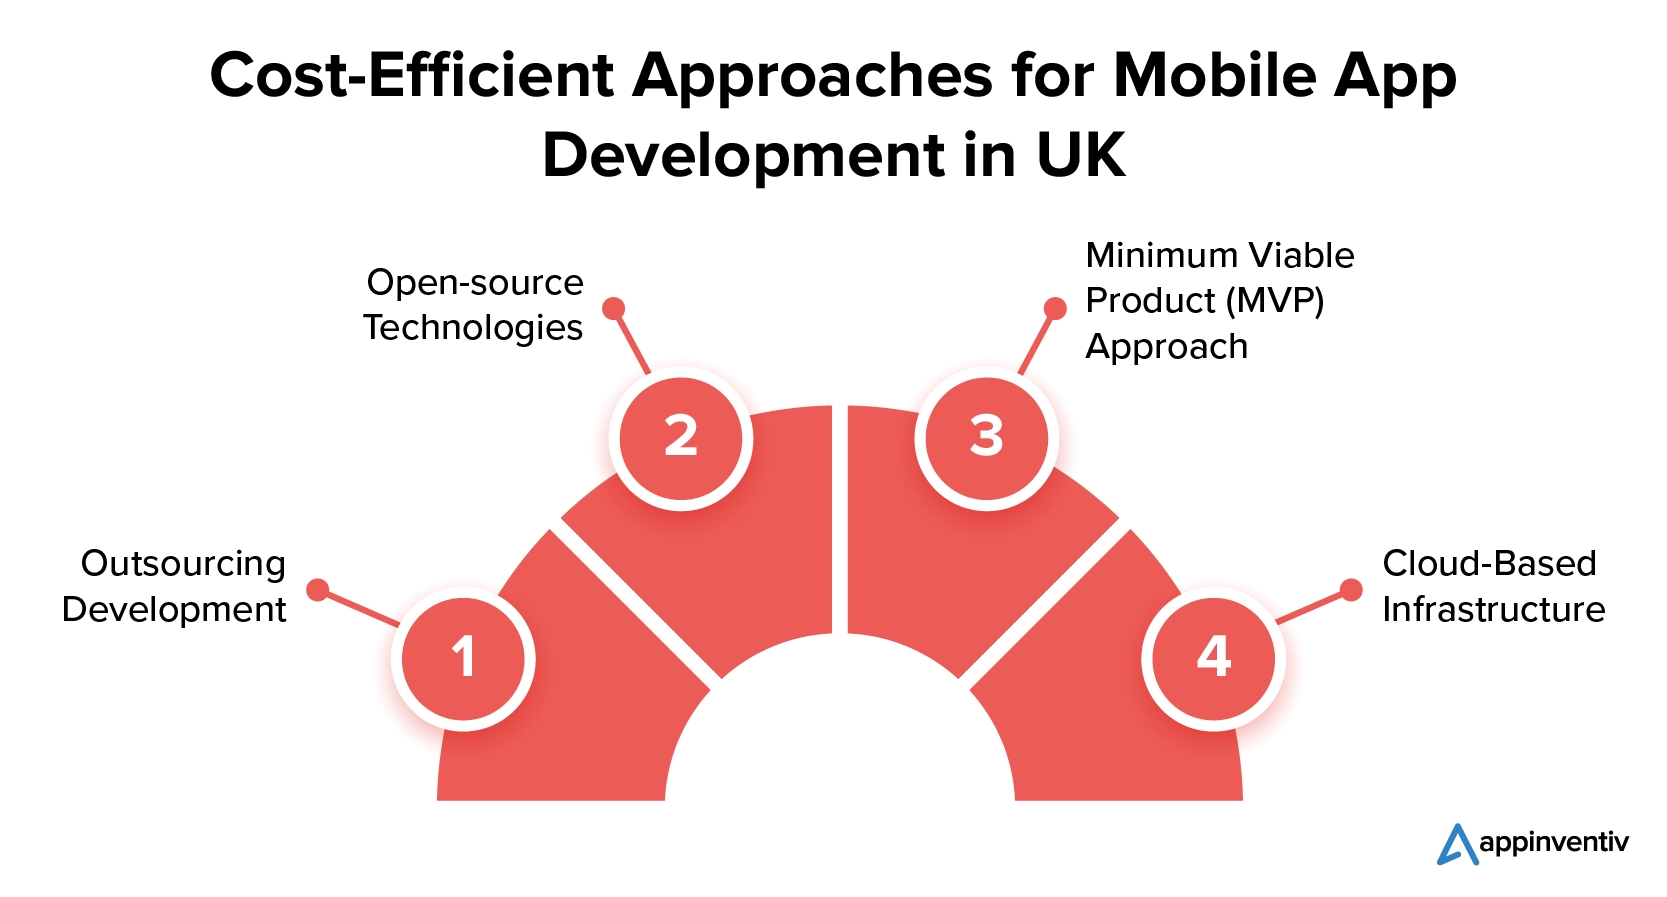 Enfoques más eficientes para el desarrollo de aplicaciones móviles en el Reino Unido